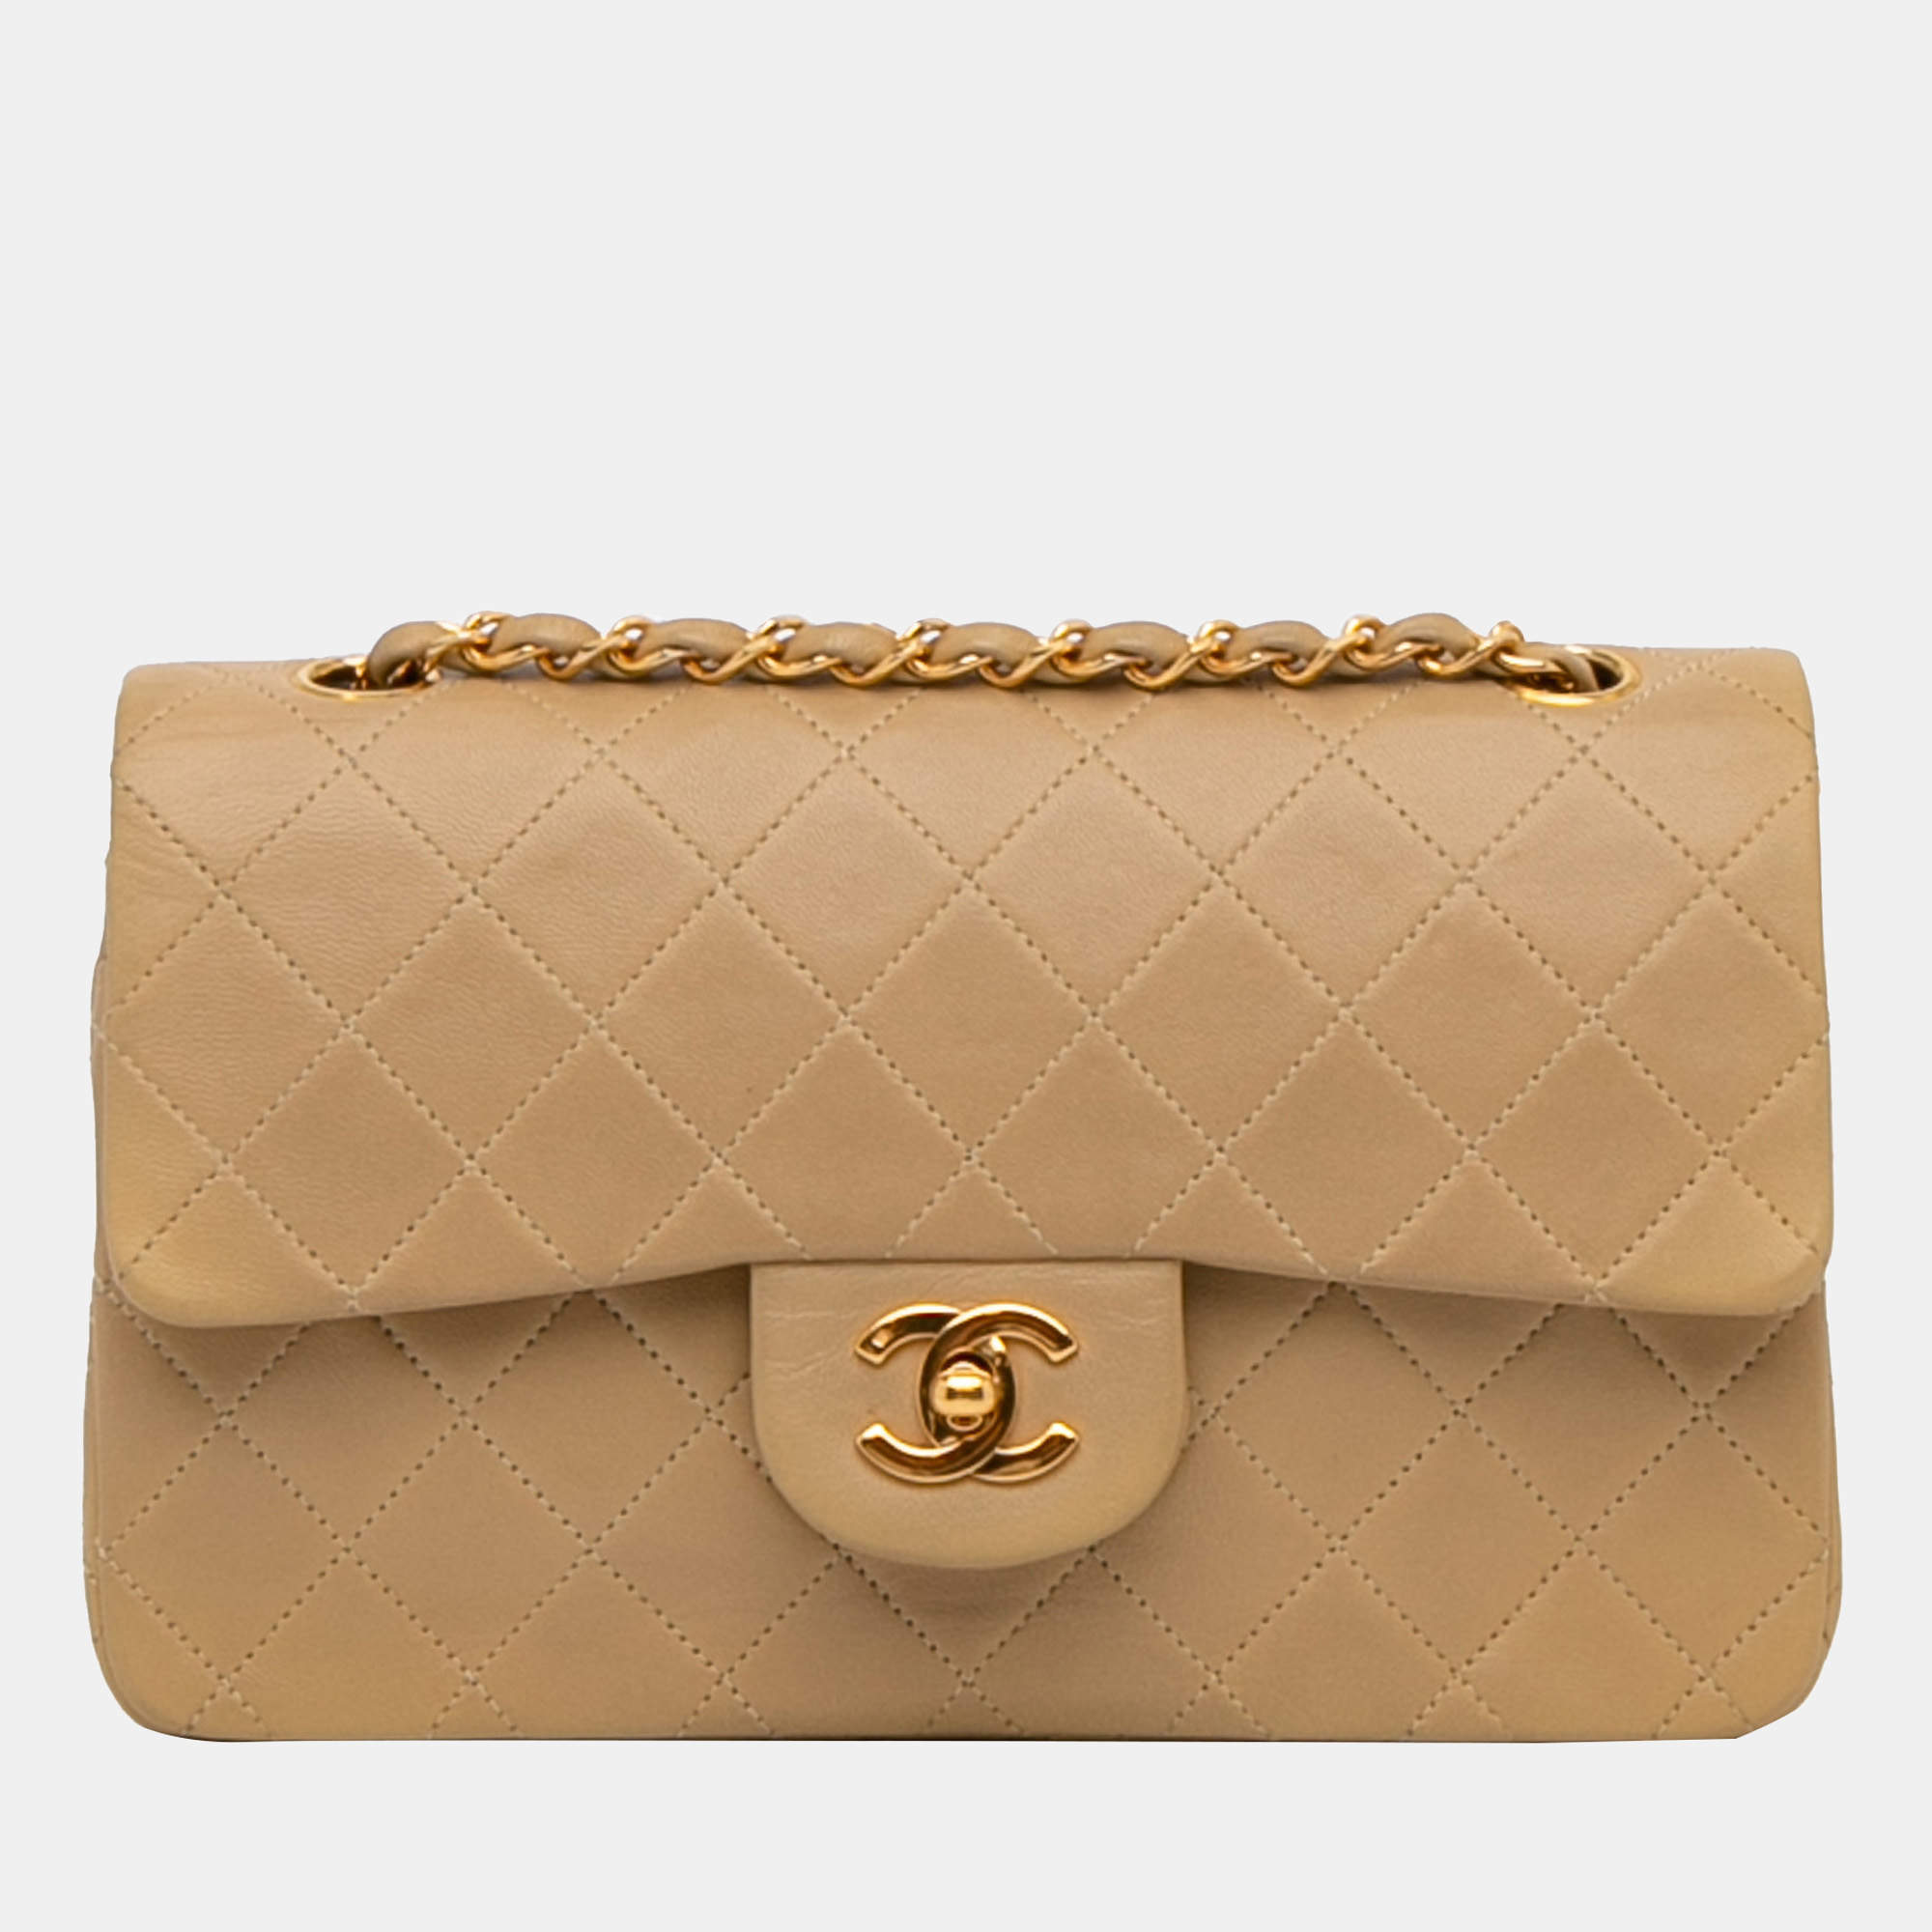 Chanel Vintage Lambskin Leather Dual Slip Pocket Camera Shopper Shoulder Bag